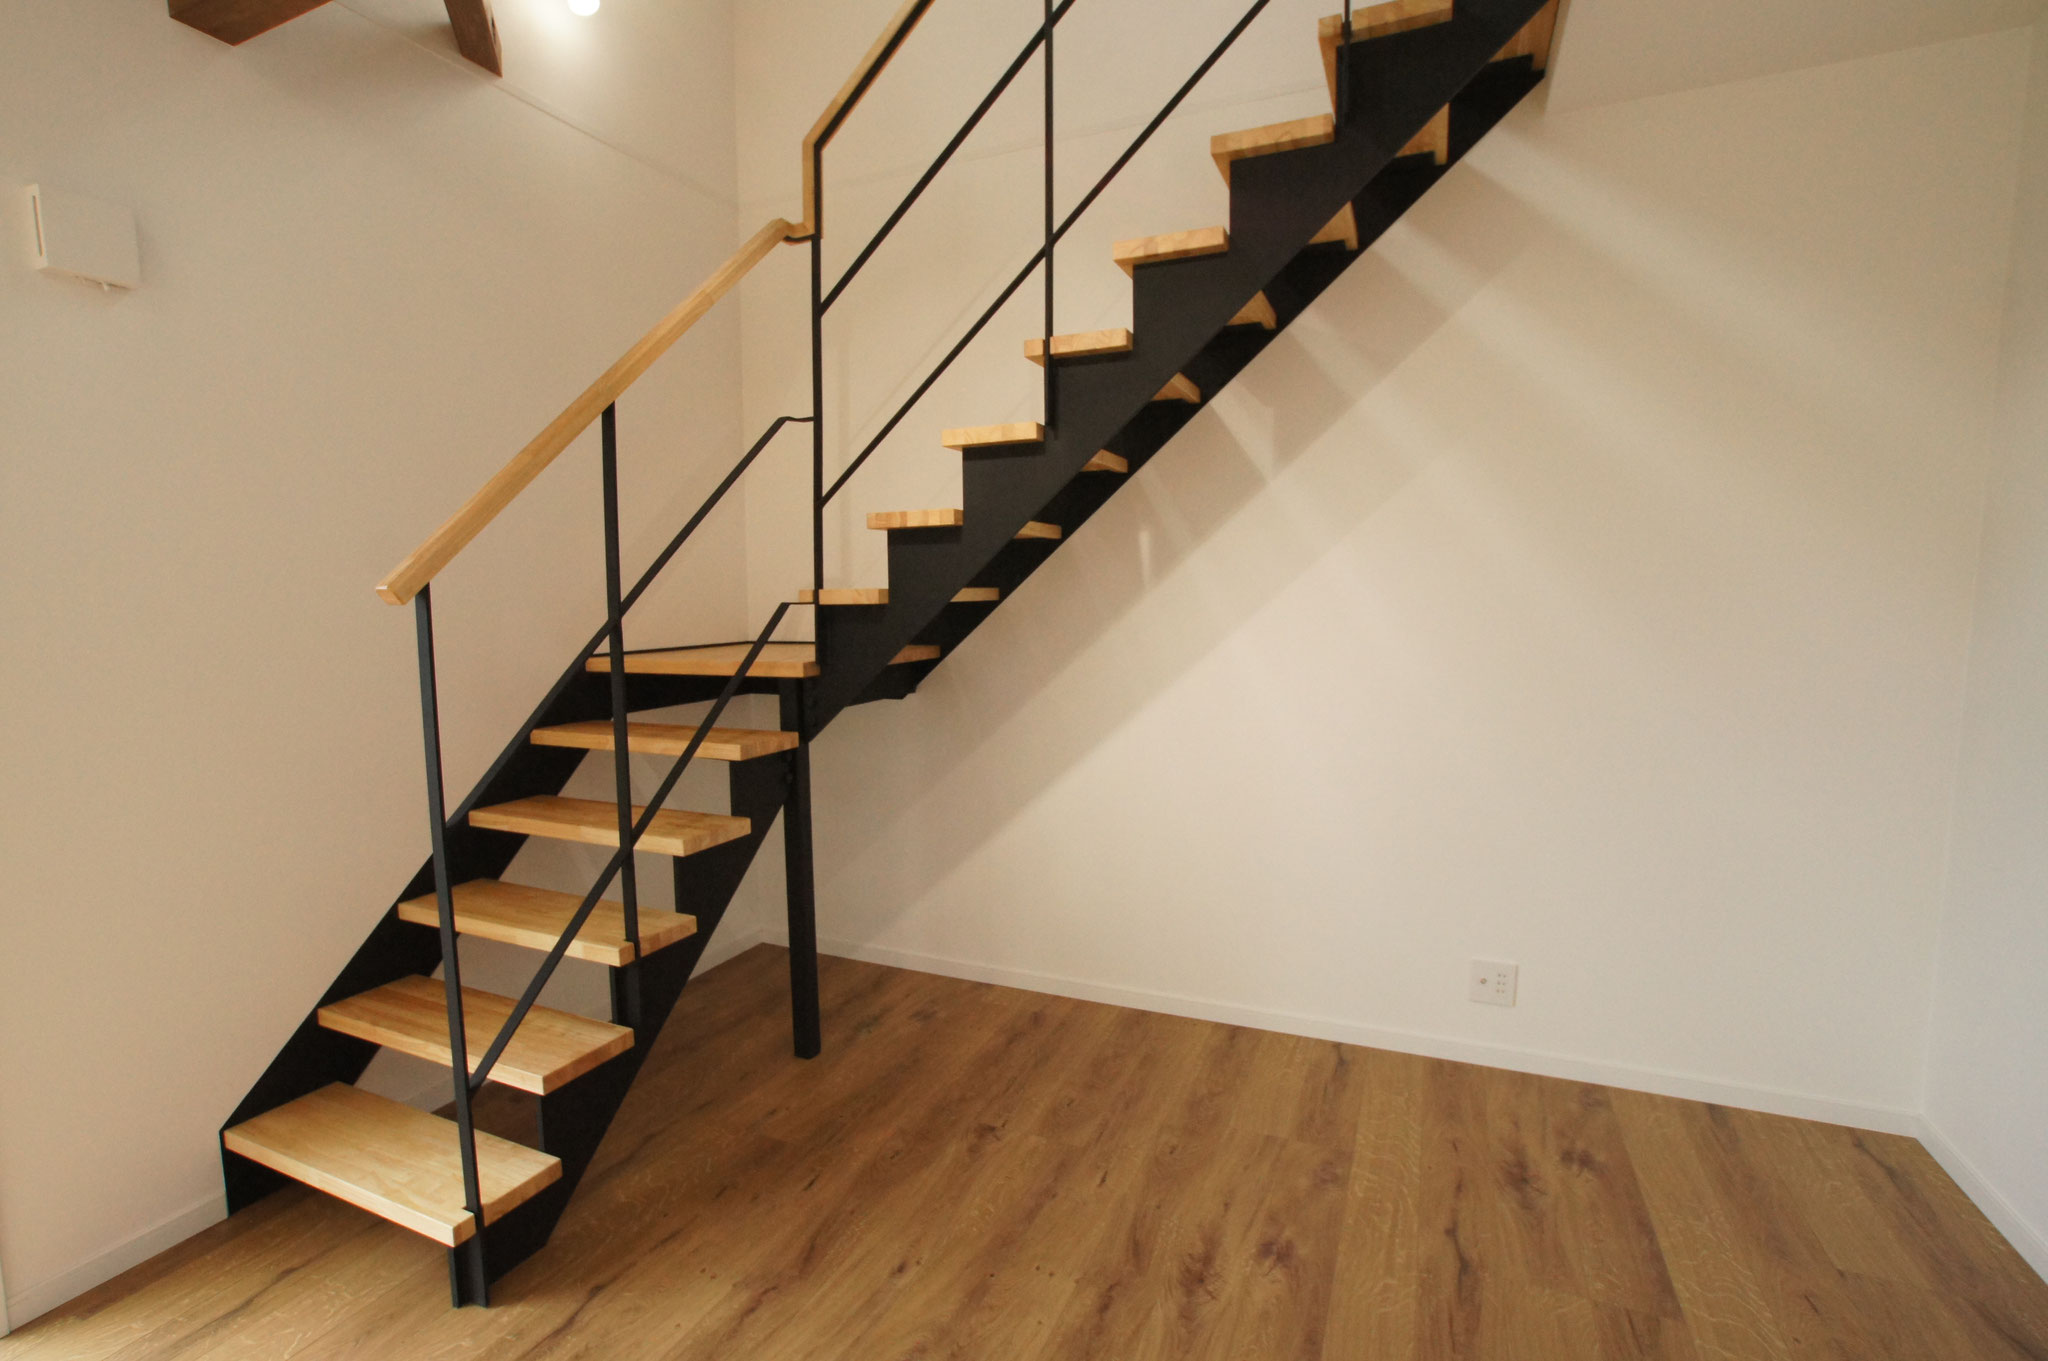 階段のフレームは鉄骨で踏板は木板を使用しています。リビングのデザインの一部としても活かされています。